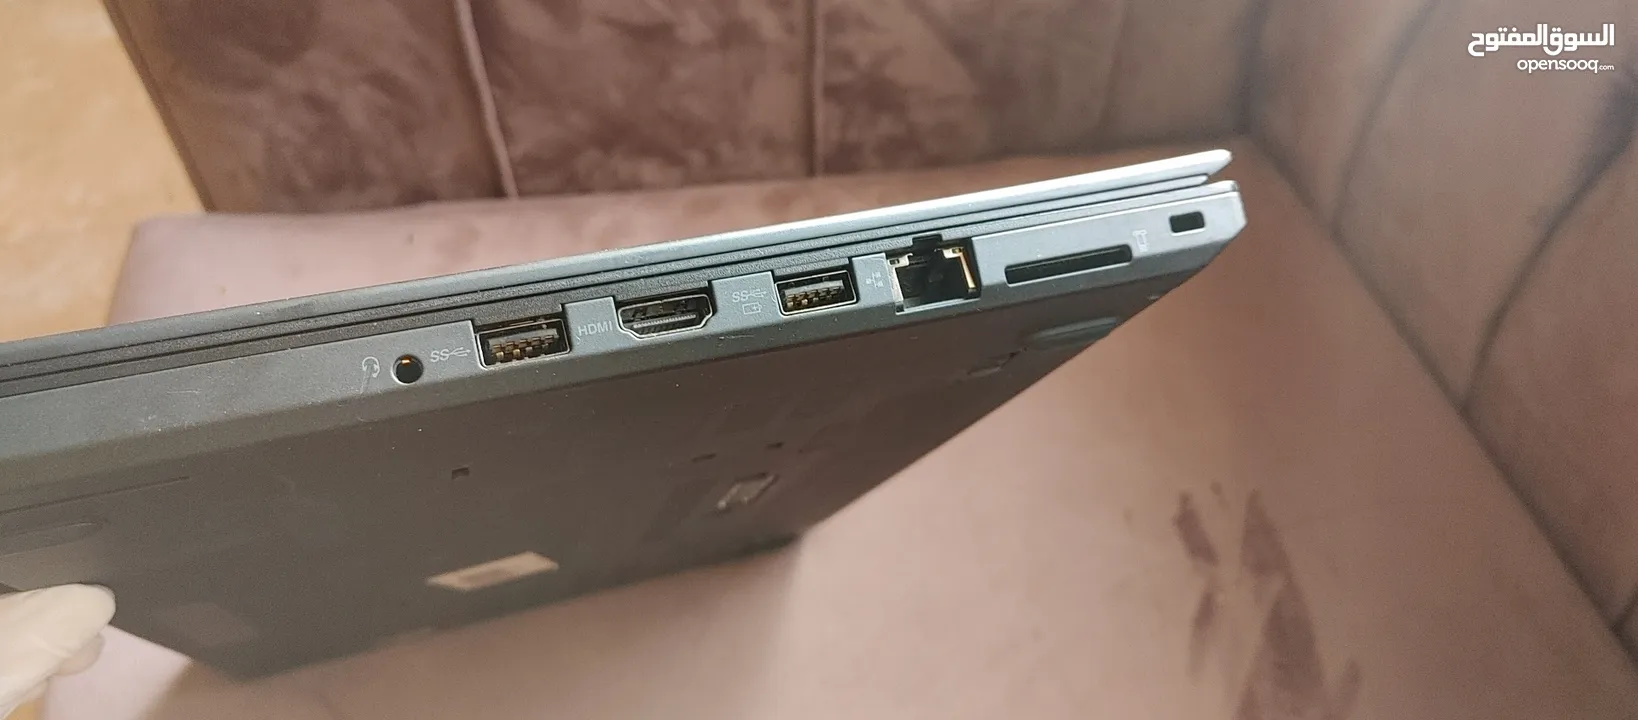 ThinkPad i7 vPro 16 GB LTE  لابتوب بزنس سريع